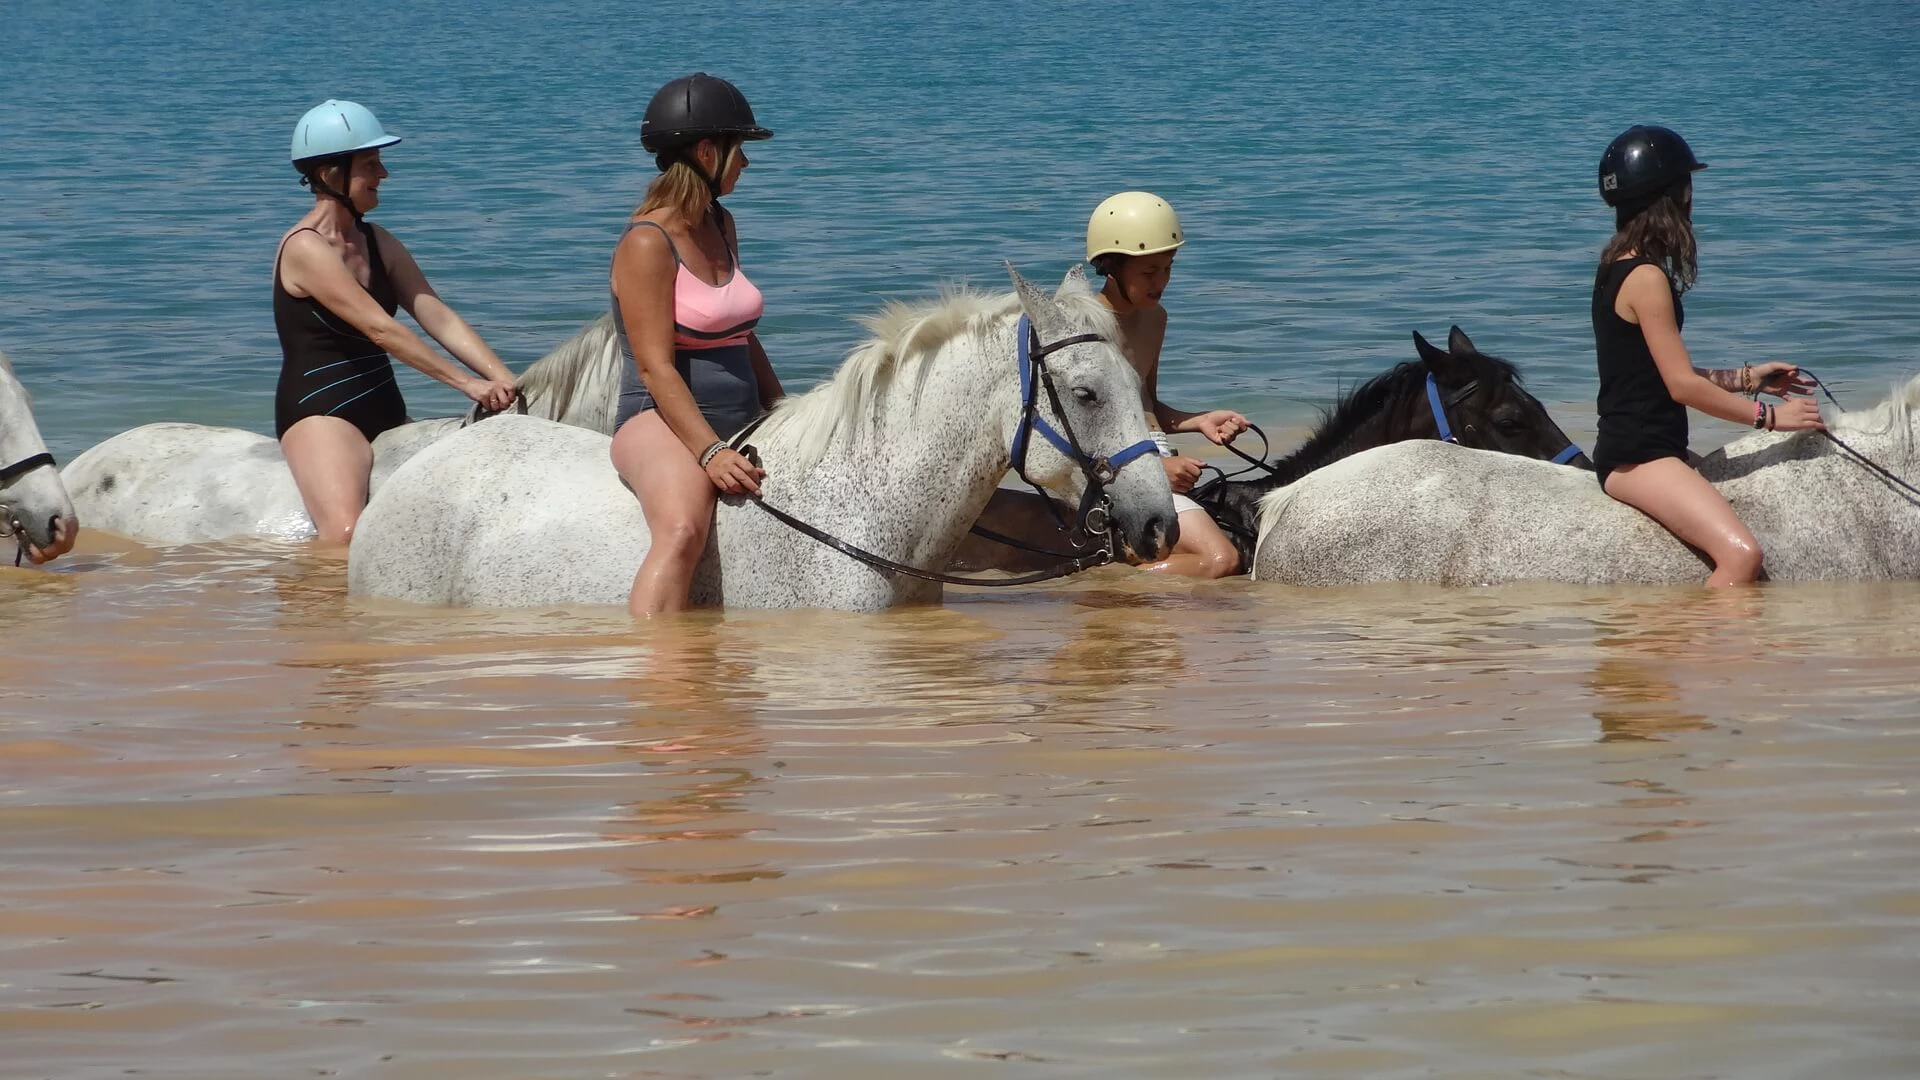 Reiter auf Pferden reiten durch den Lac de Ste. Croix. Das Wasser reicht bis zu den Knien.